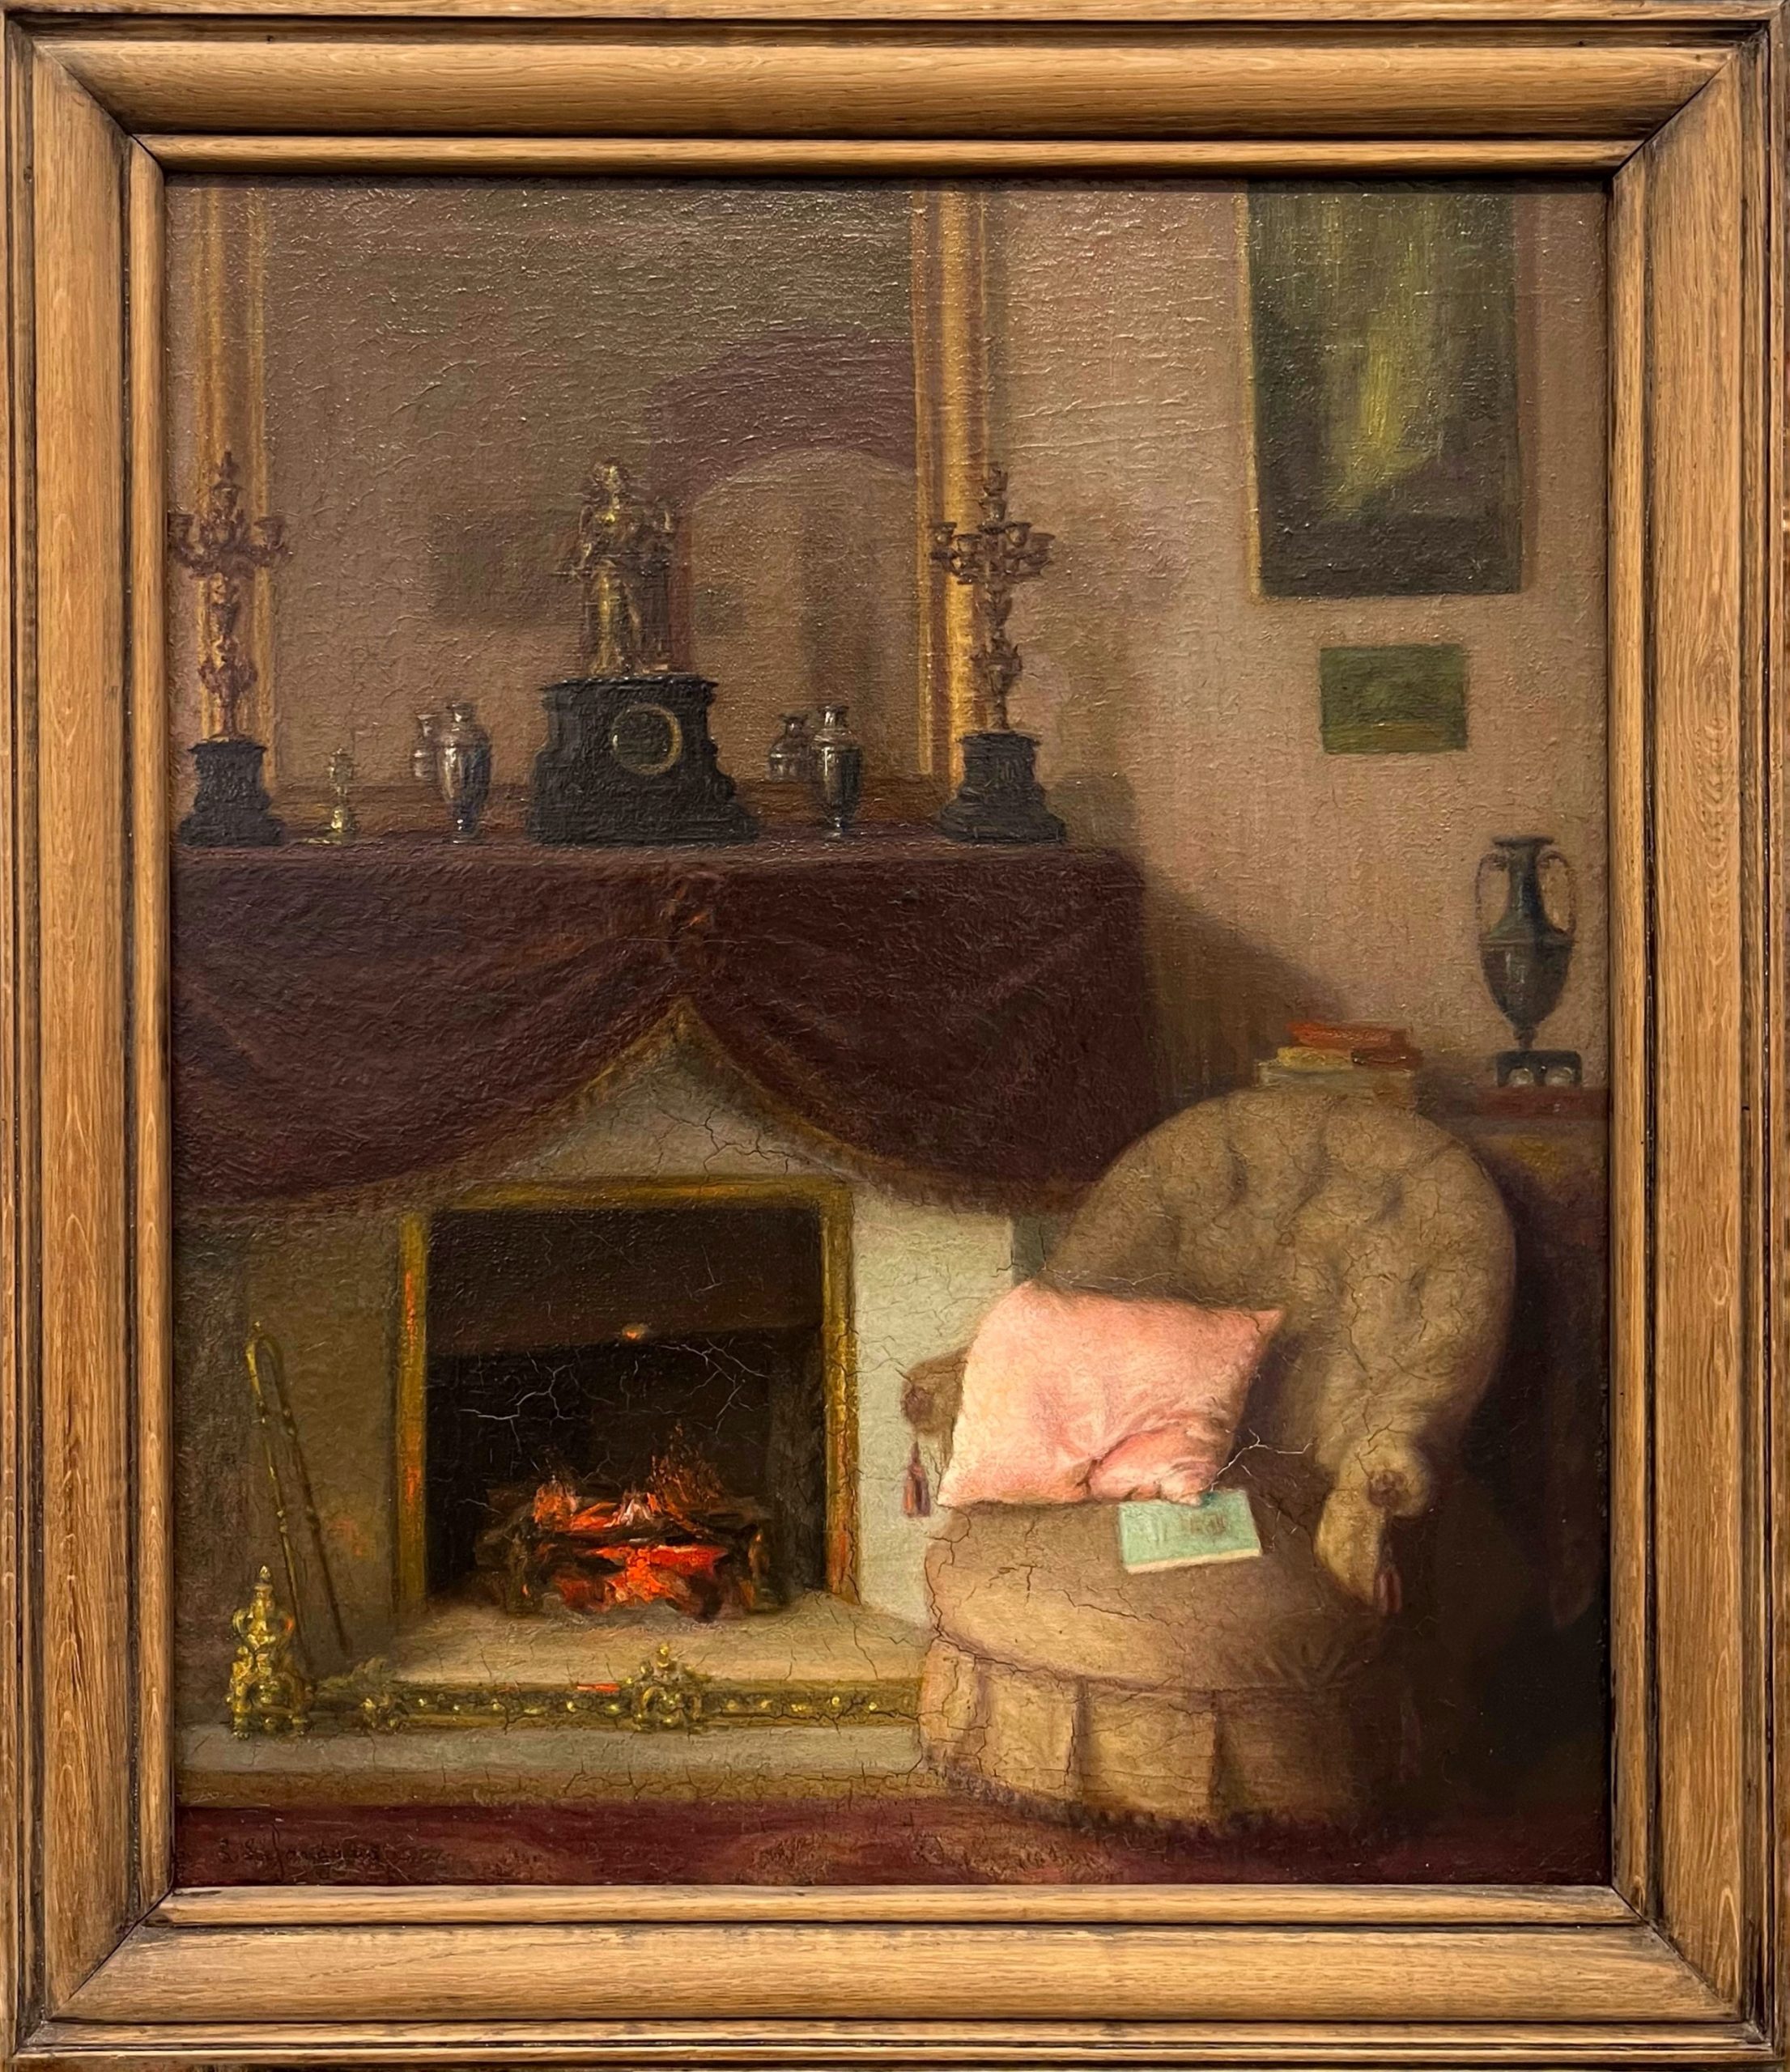 scène d'intérieur, XIXe, huile sur toile, 54x65cm